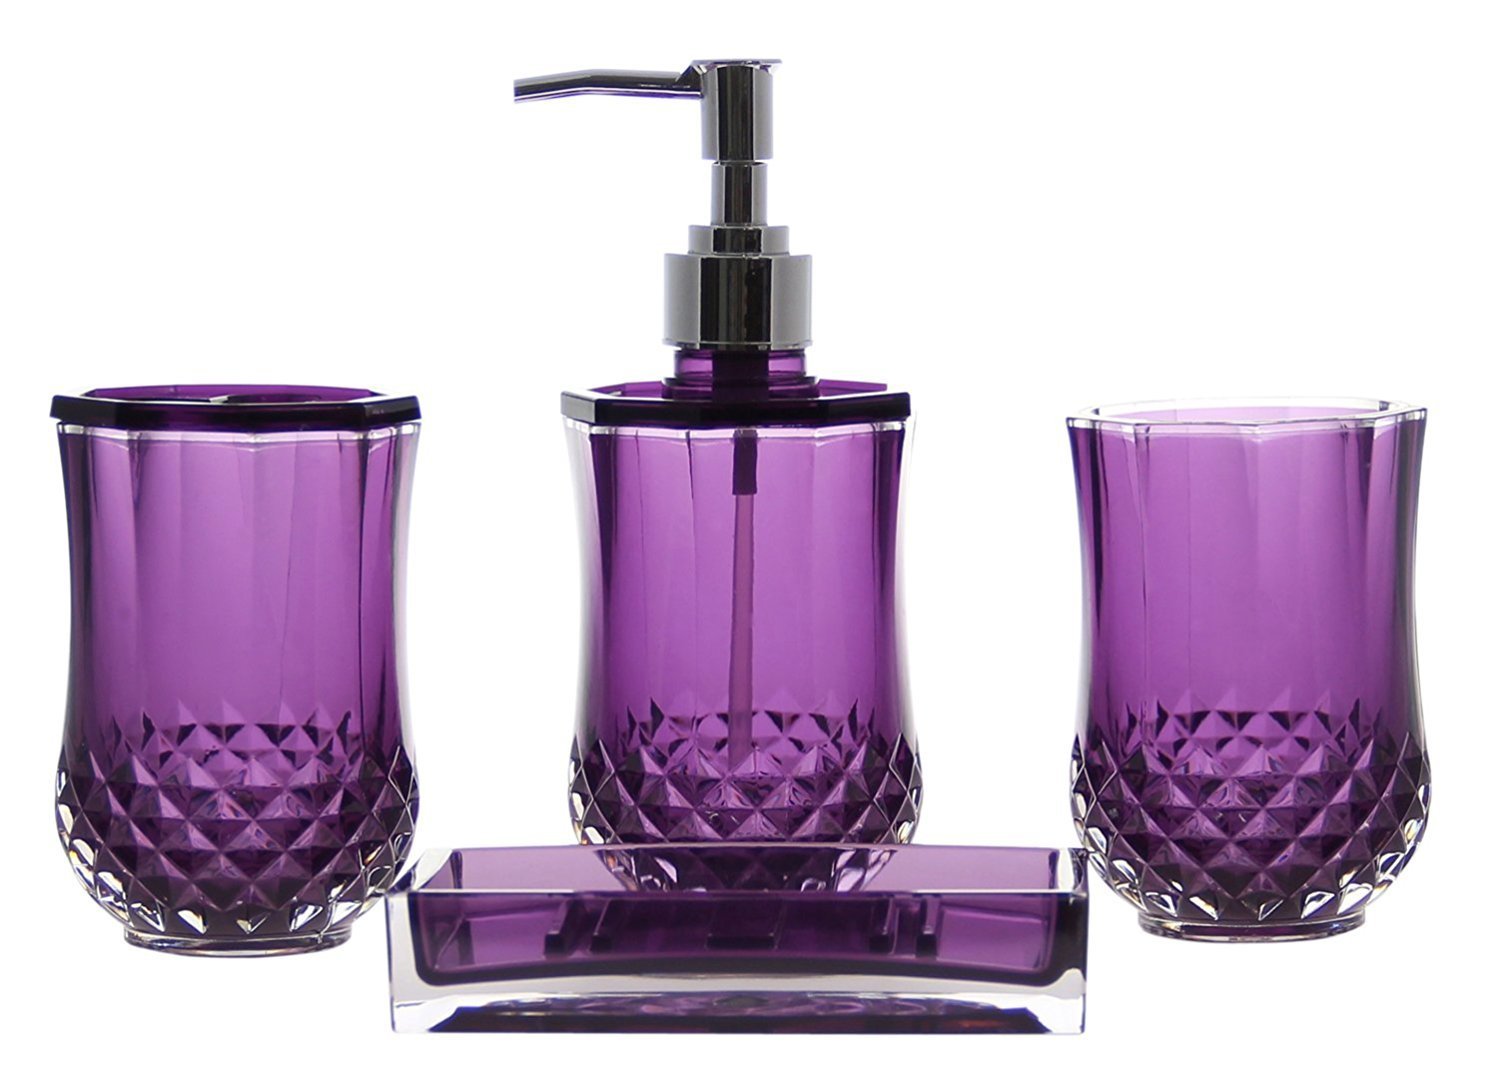 JustNile Acrylic 4-Piece Bathroom Accessory Set - Translucent Purple